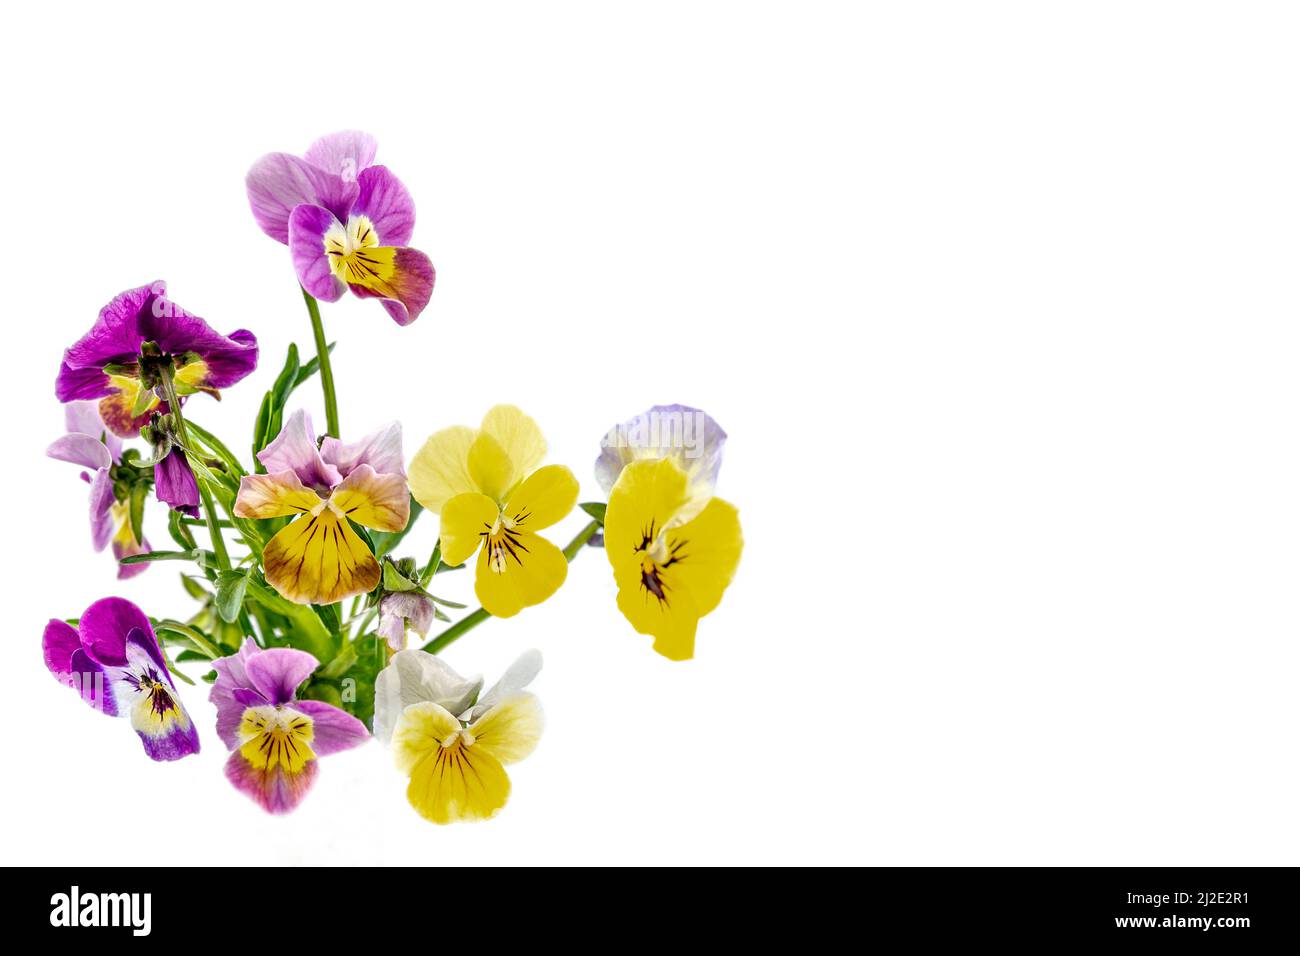 Stiefmütterchen Veilchen blüht es ist auf dem weißen Hintergrund isoliert:Feld Stiefmütterchen Viola arvensis Arten von Veilchen Stockfoto